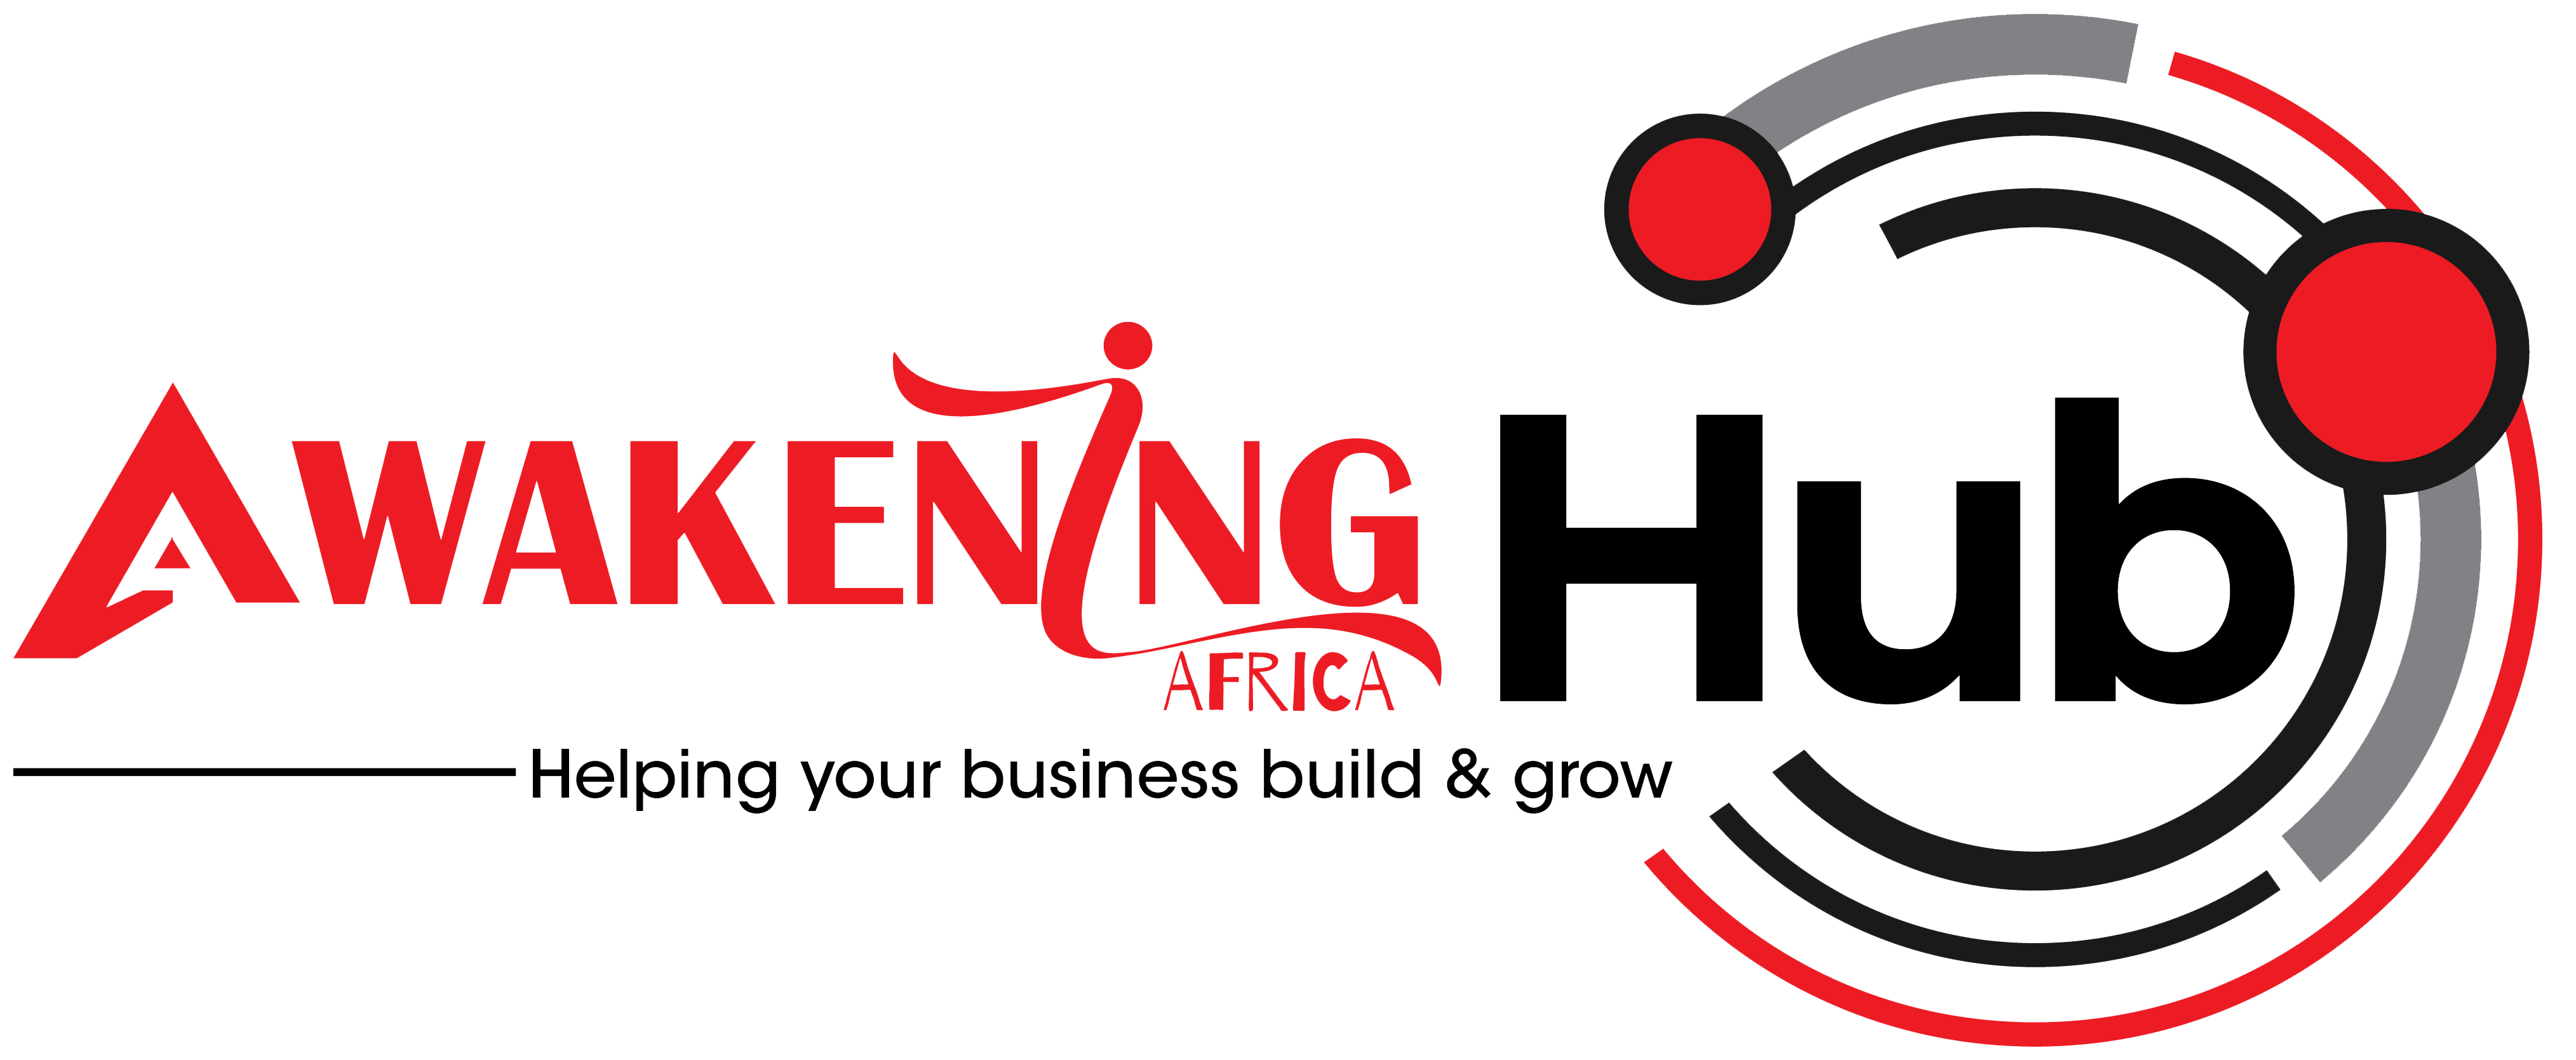 Awakening Africa Hub